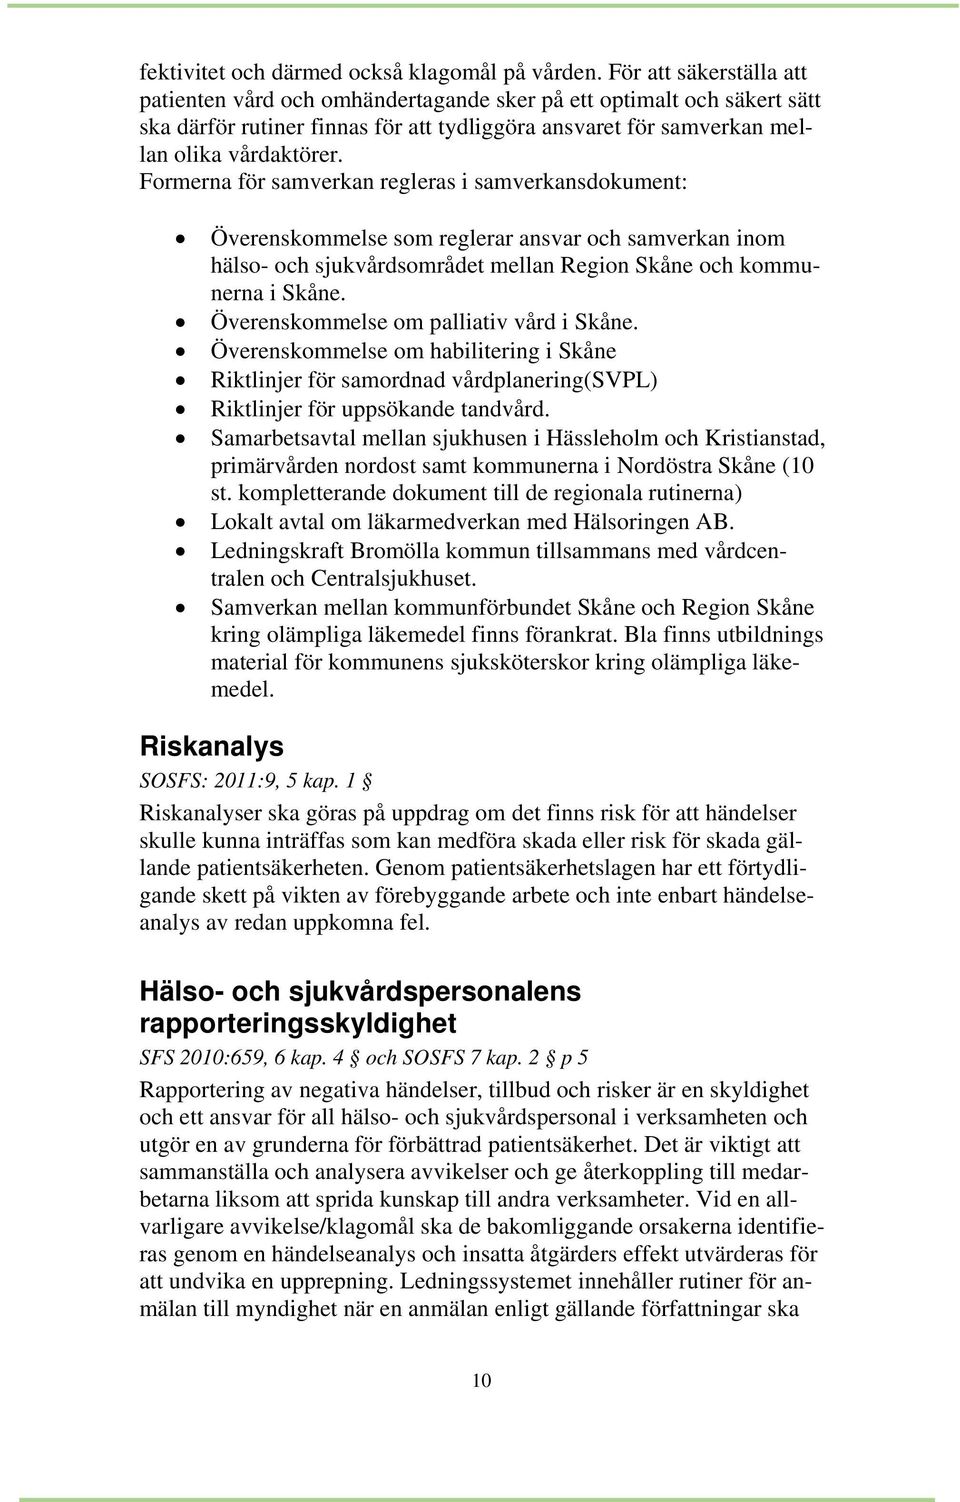 Formerna för samverkan regleras i samverkansdokument: Överenskommelse som reglerar ansvar och samverkan inom hälso- och sjukvårdsområdet mellan Region Skåne och kommunerna i Skåne.